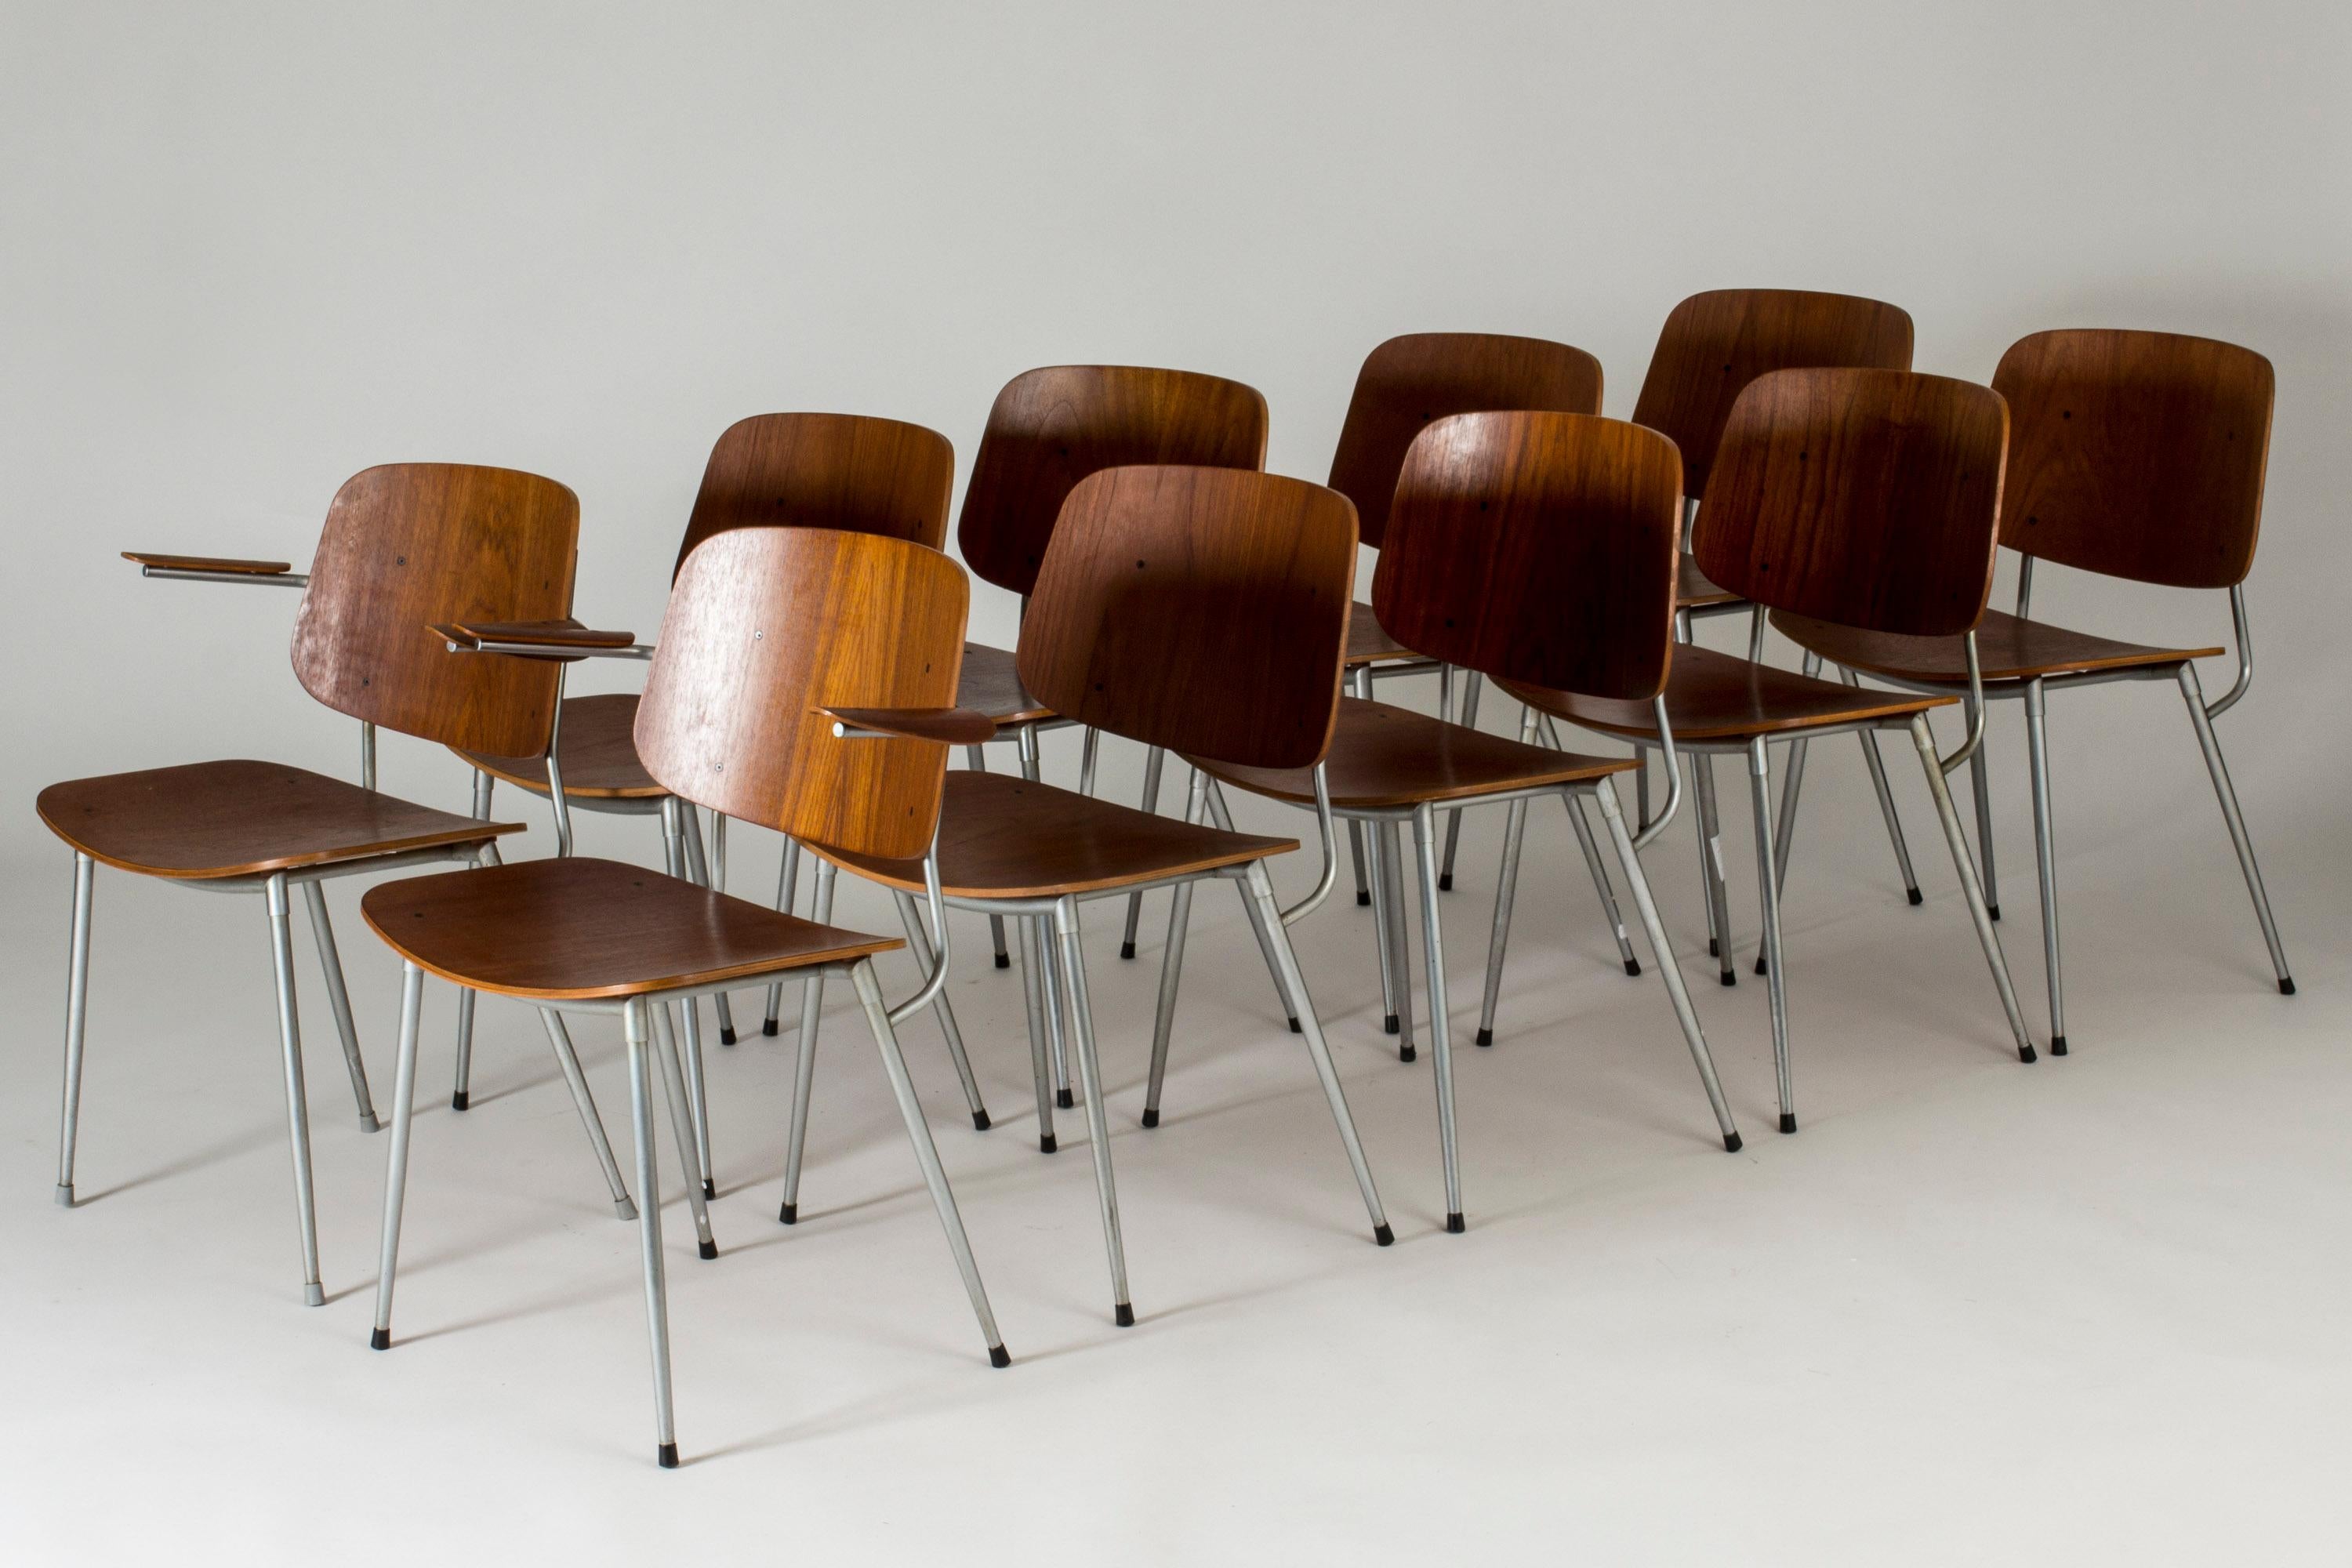 Satz von zehn Teakholz-Esszimmerstühlen von Børge Mogensen, Modell 155, in einer seltenen Auflage mit Stahlbeinen. Eleganter, leichter Ausdruck. Zwei der Stühle haben Armlehnen aus schön geschwungenem Teakholz.